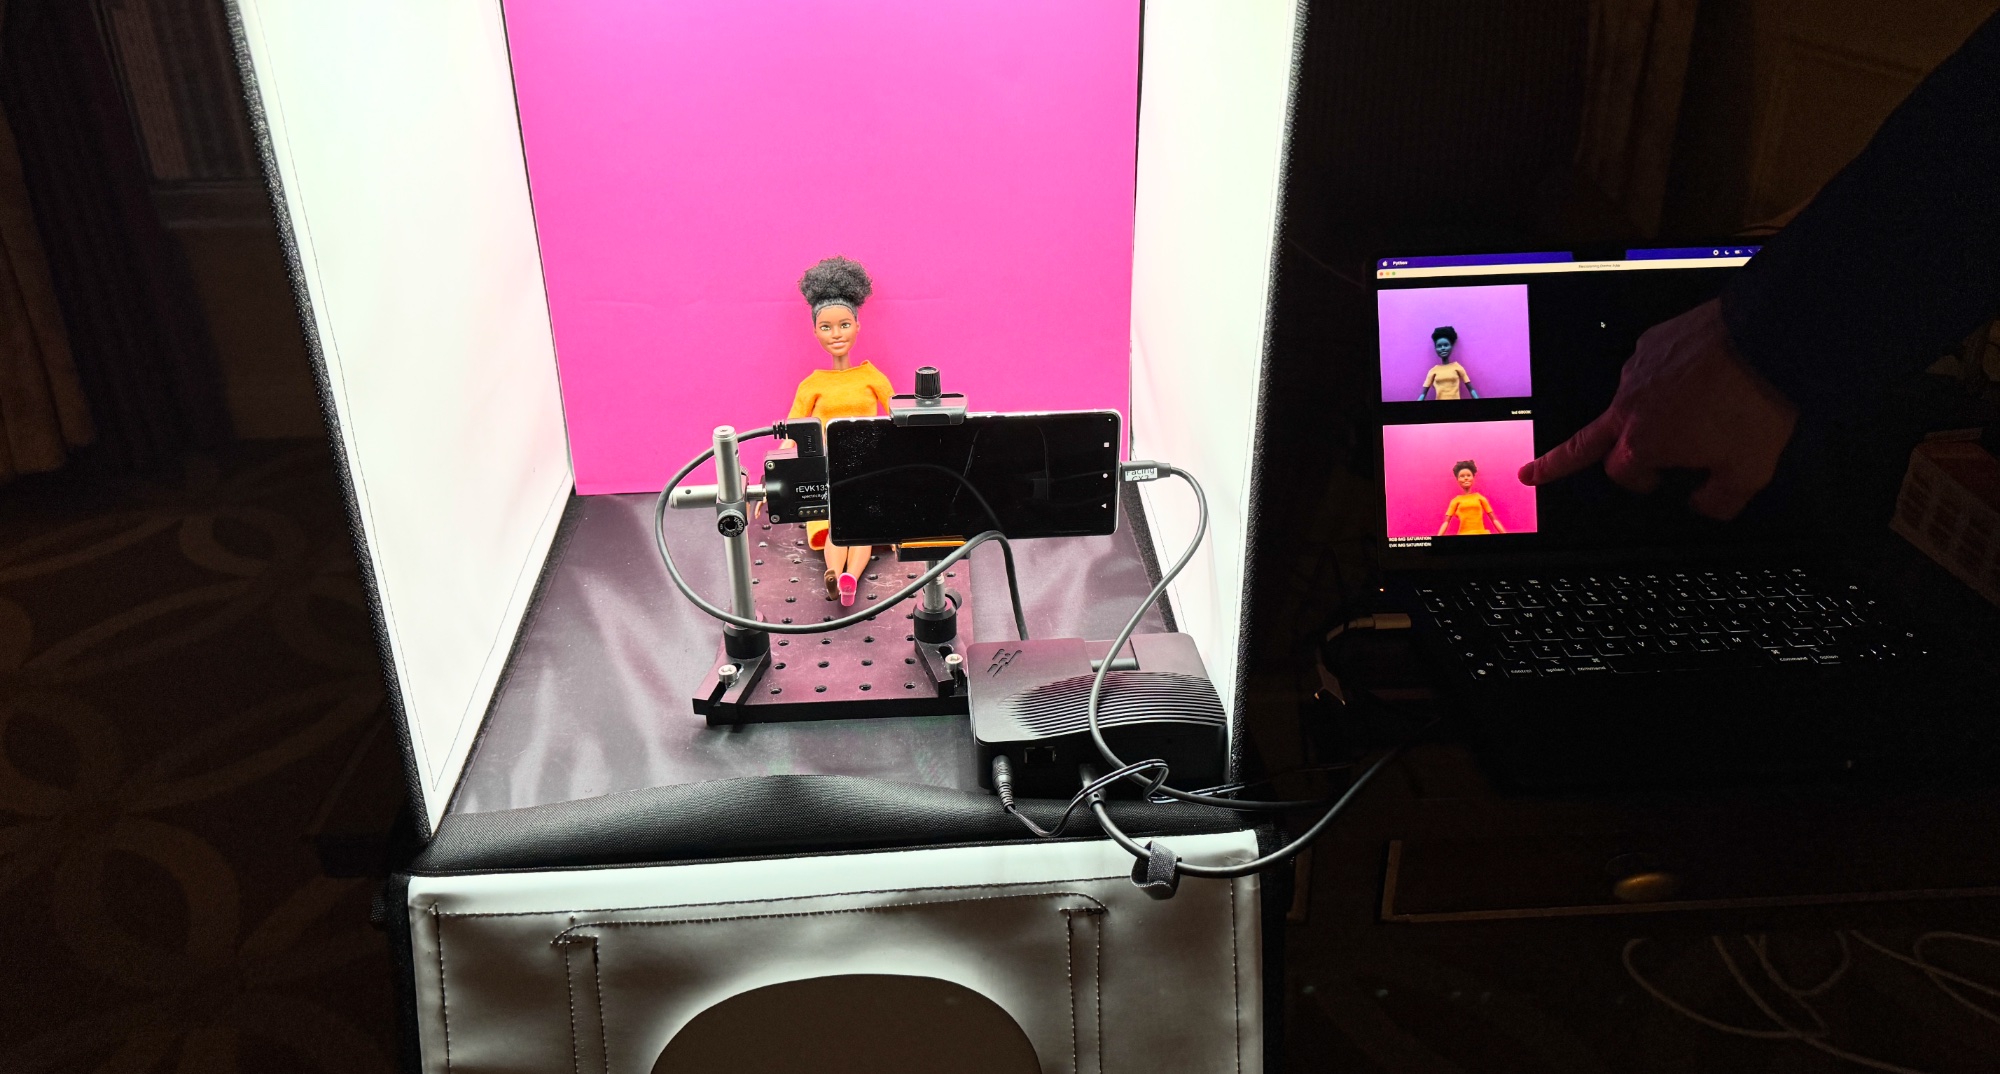 Spectricity-Kamerahandy vs. Pixel 7 Pro-Demo mit Barbie und rosa Hintergrund